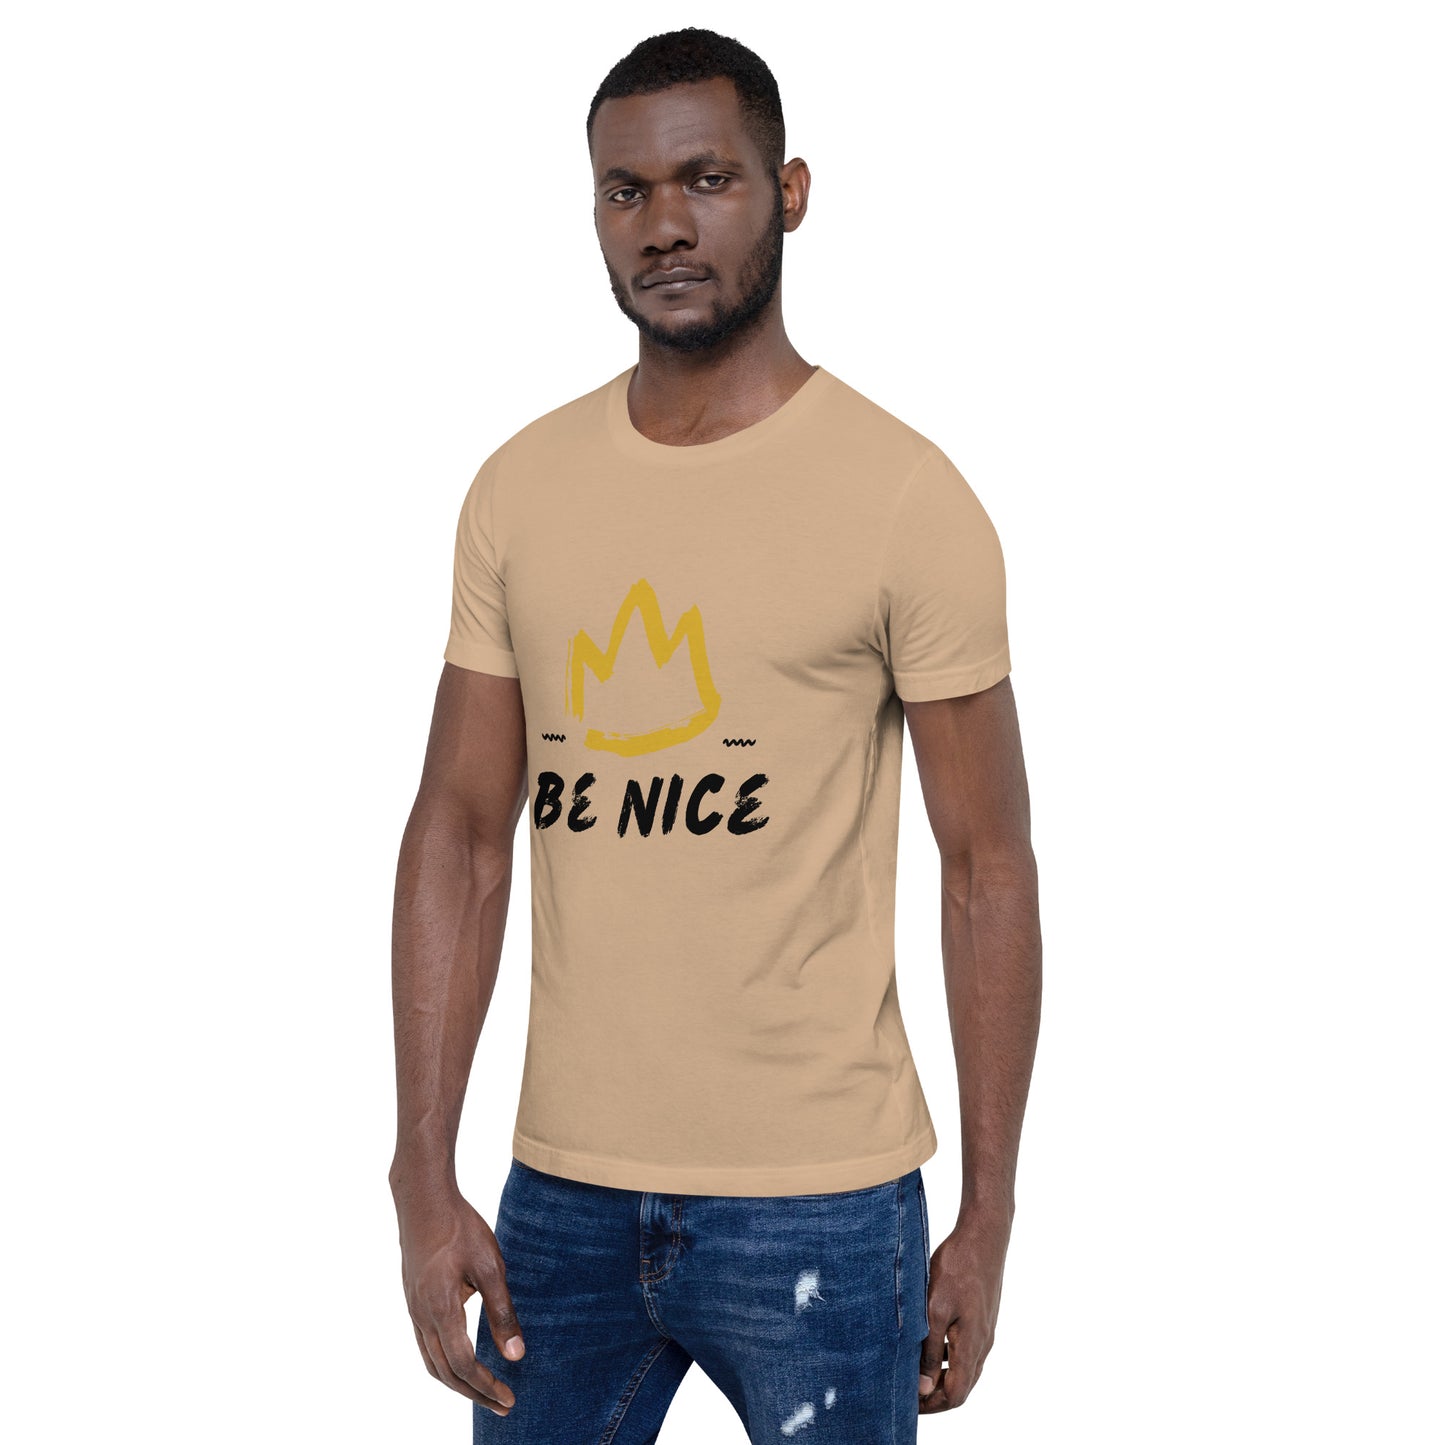 Be Nice t-shirt